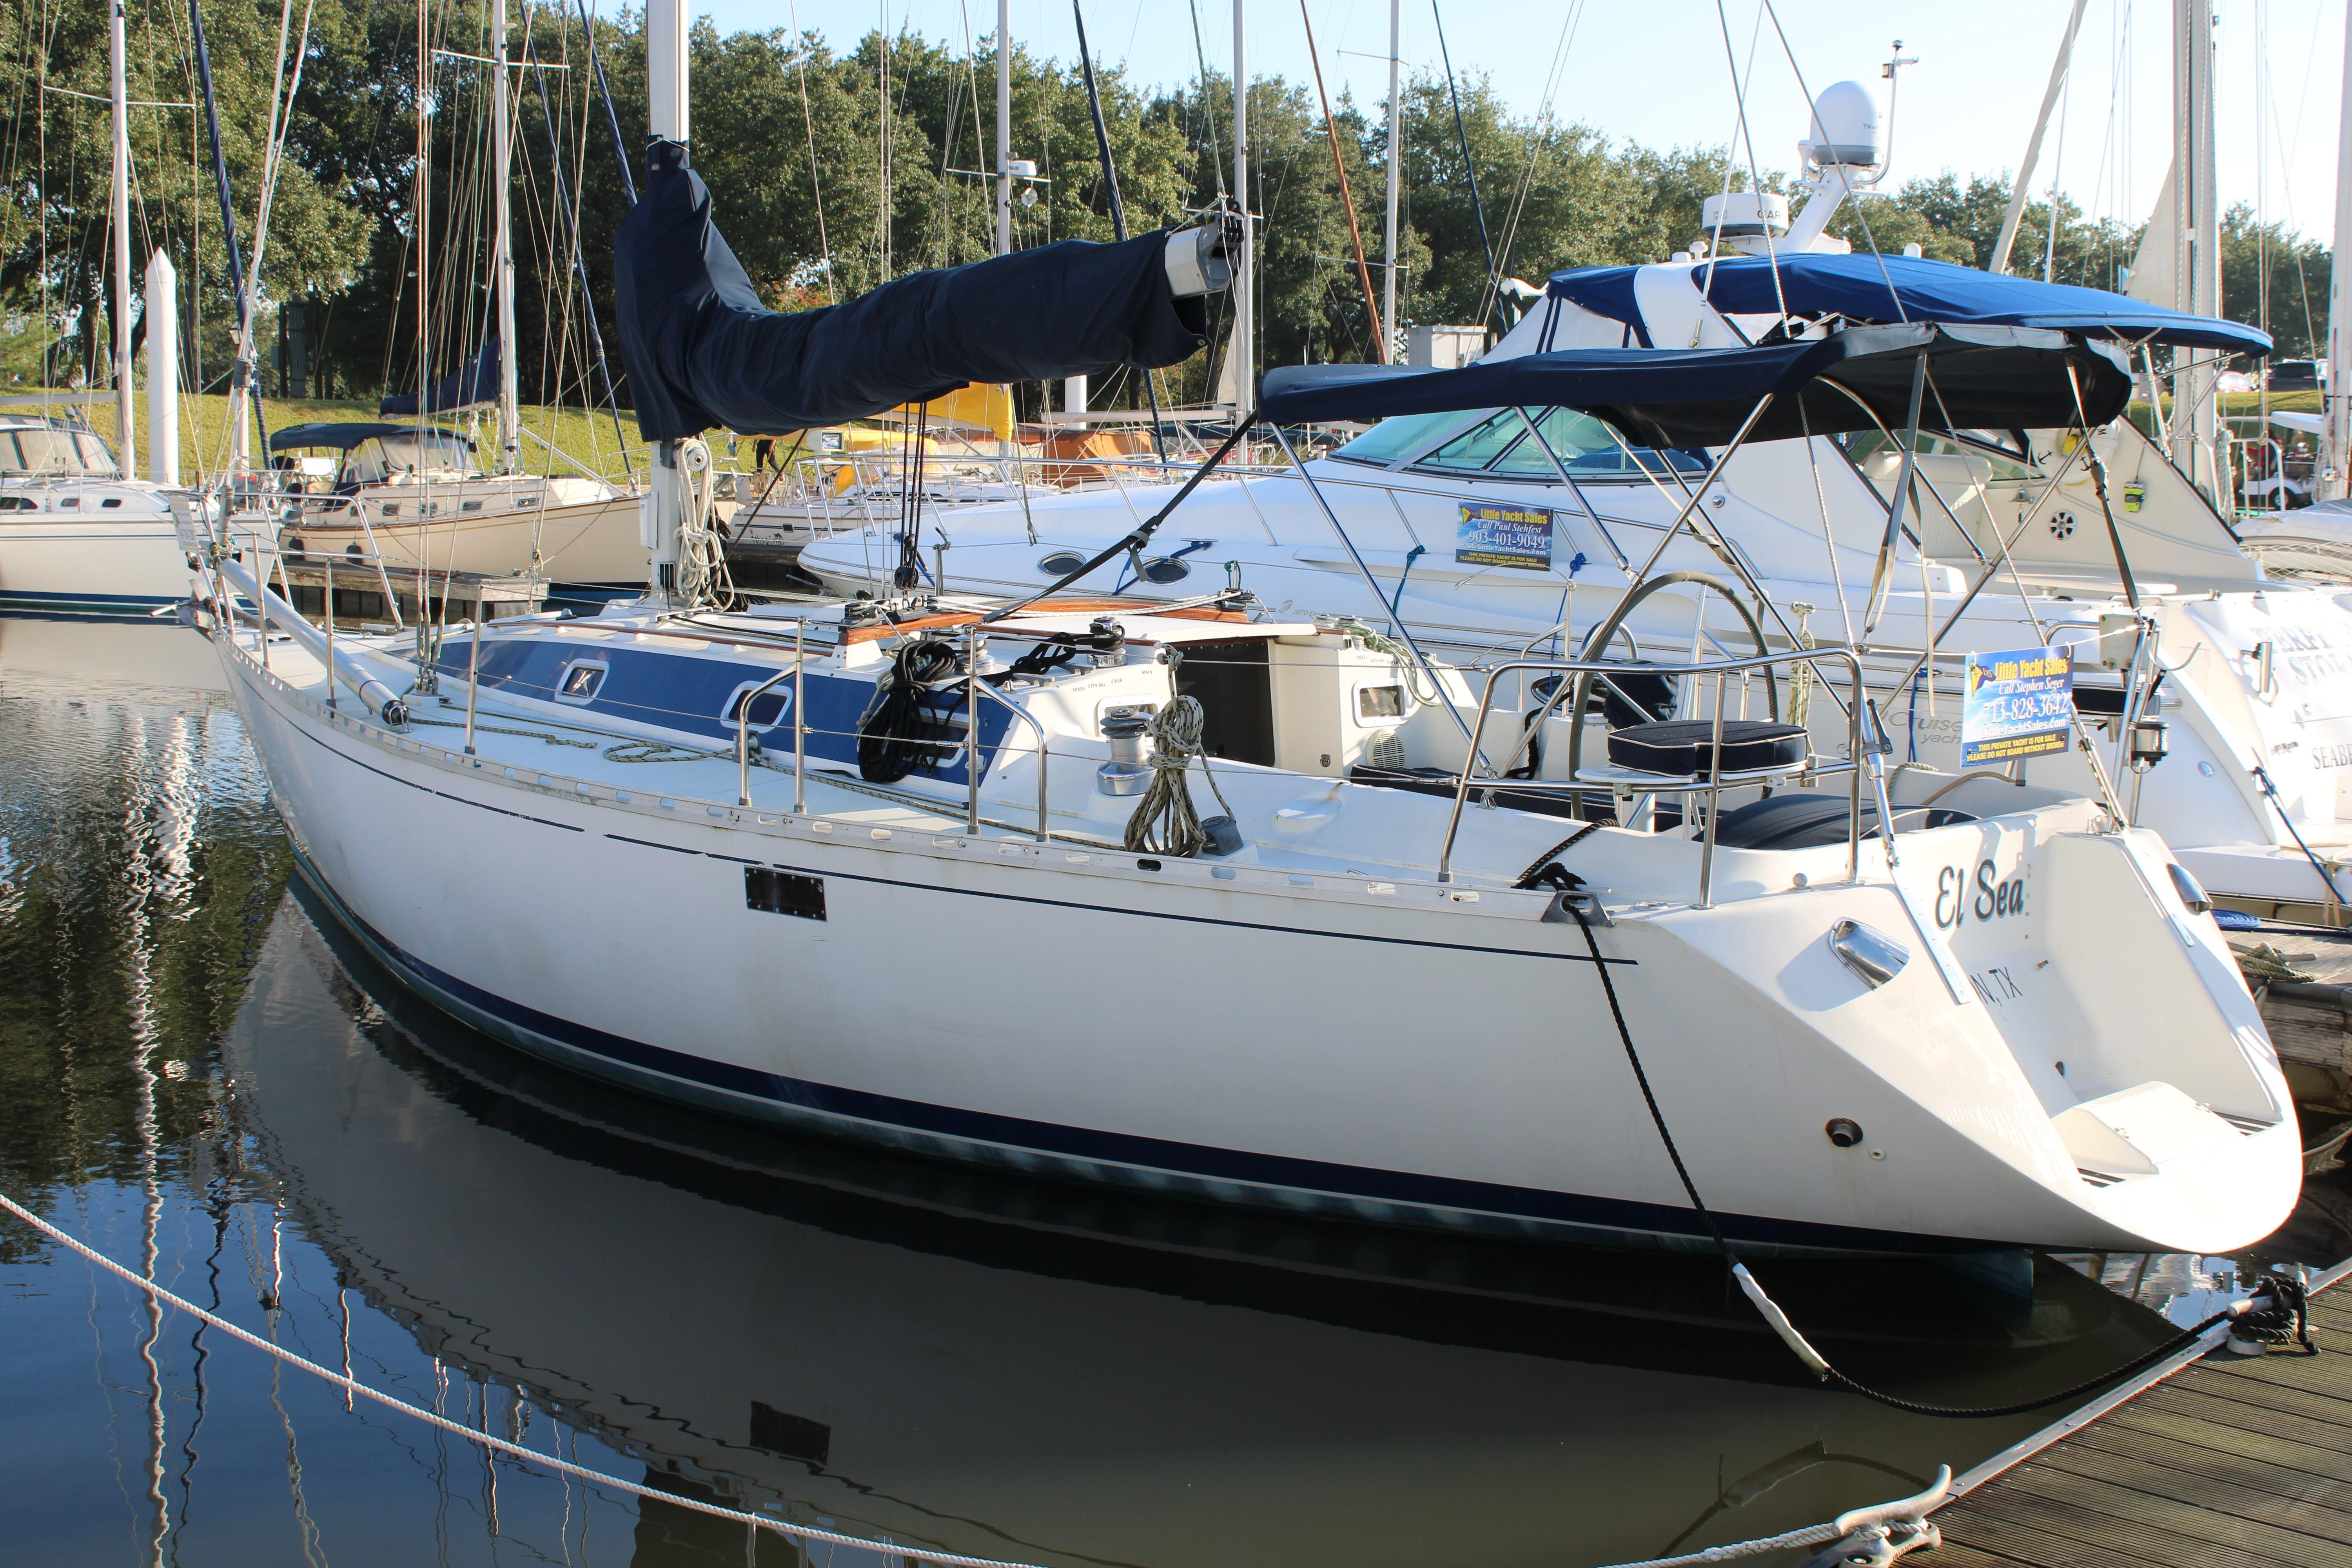 beneteau 38 sailboat for sale